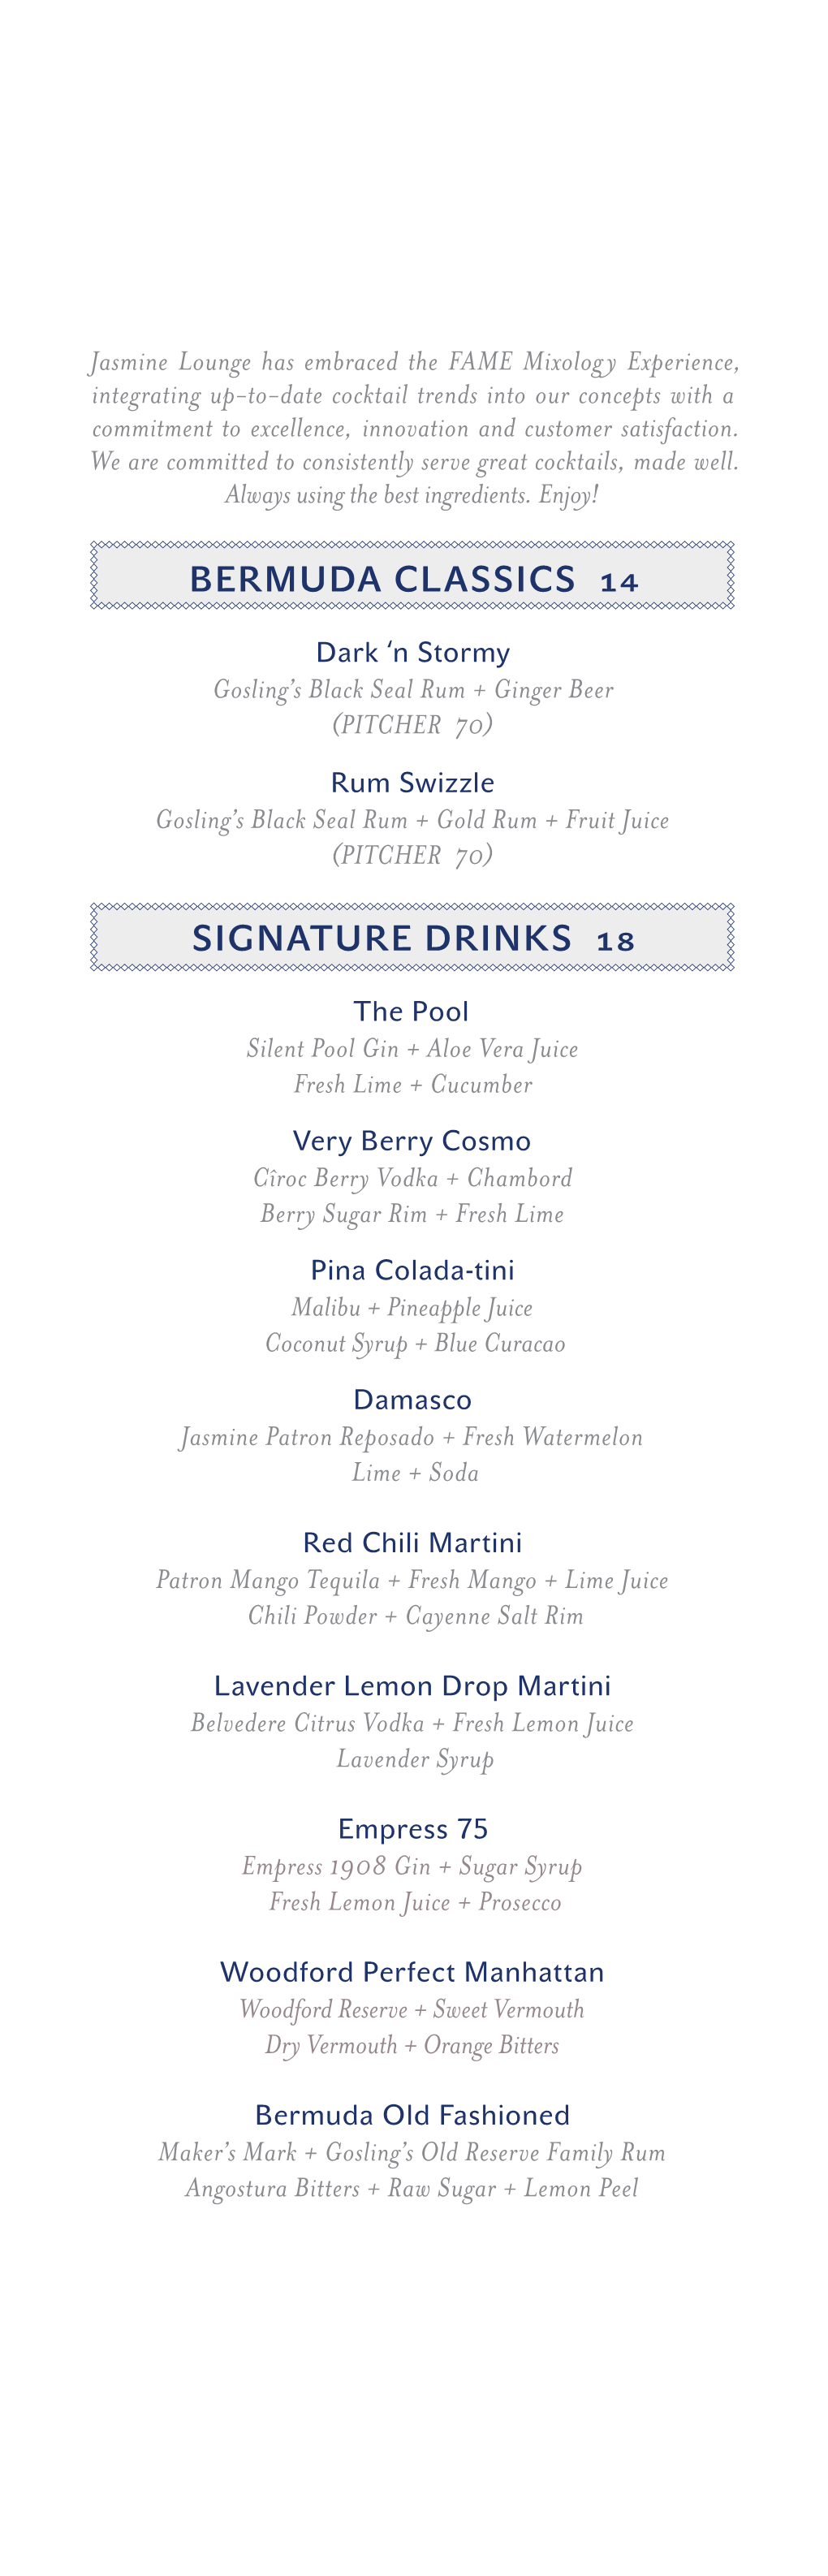 Bermuda Classics 14 Signature Drinks 18